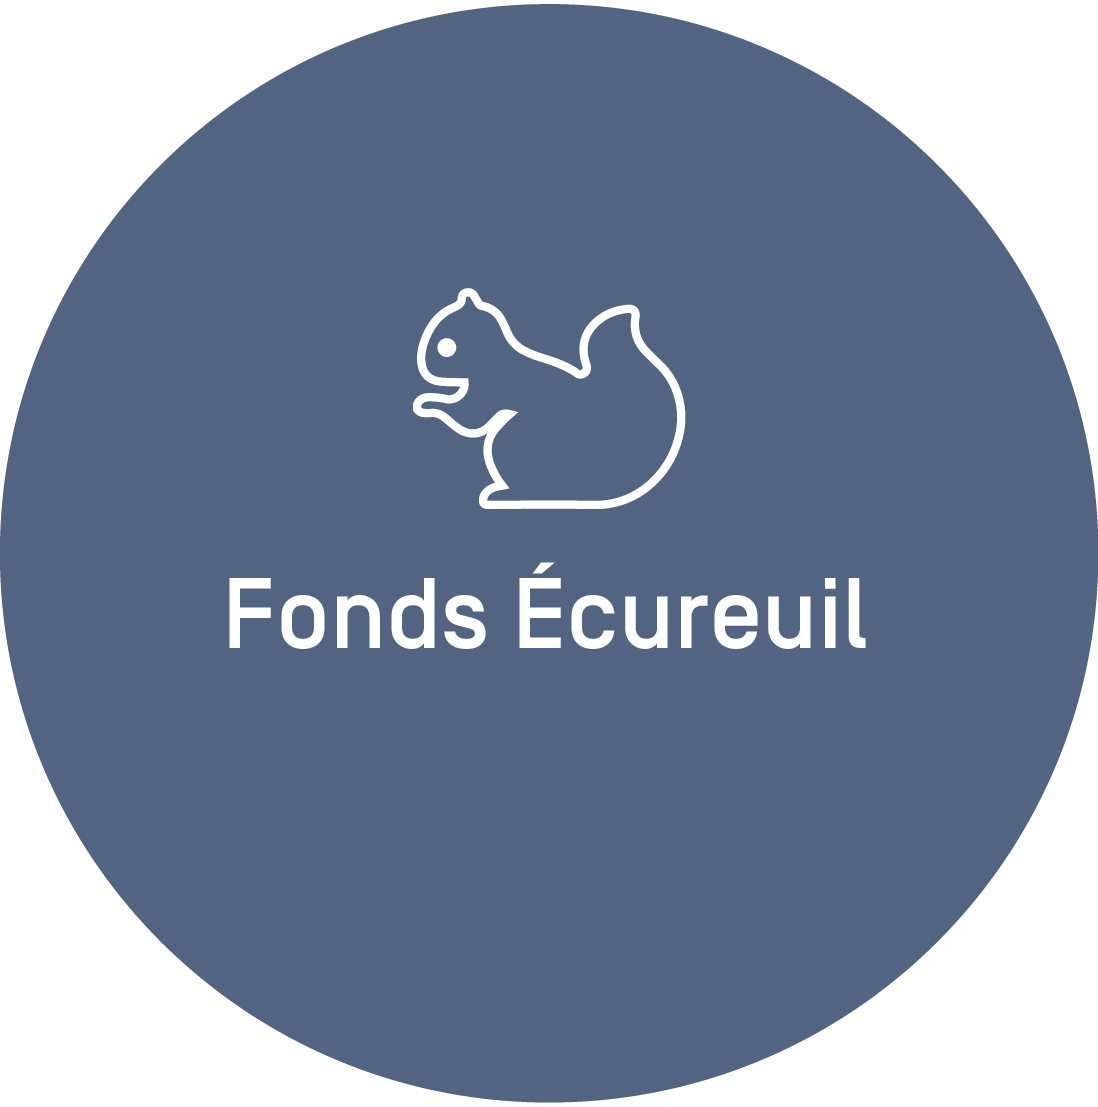 Fonds écureuil